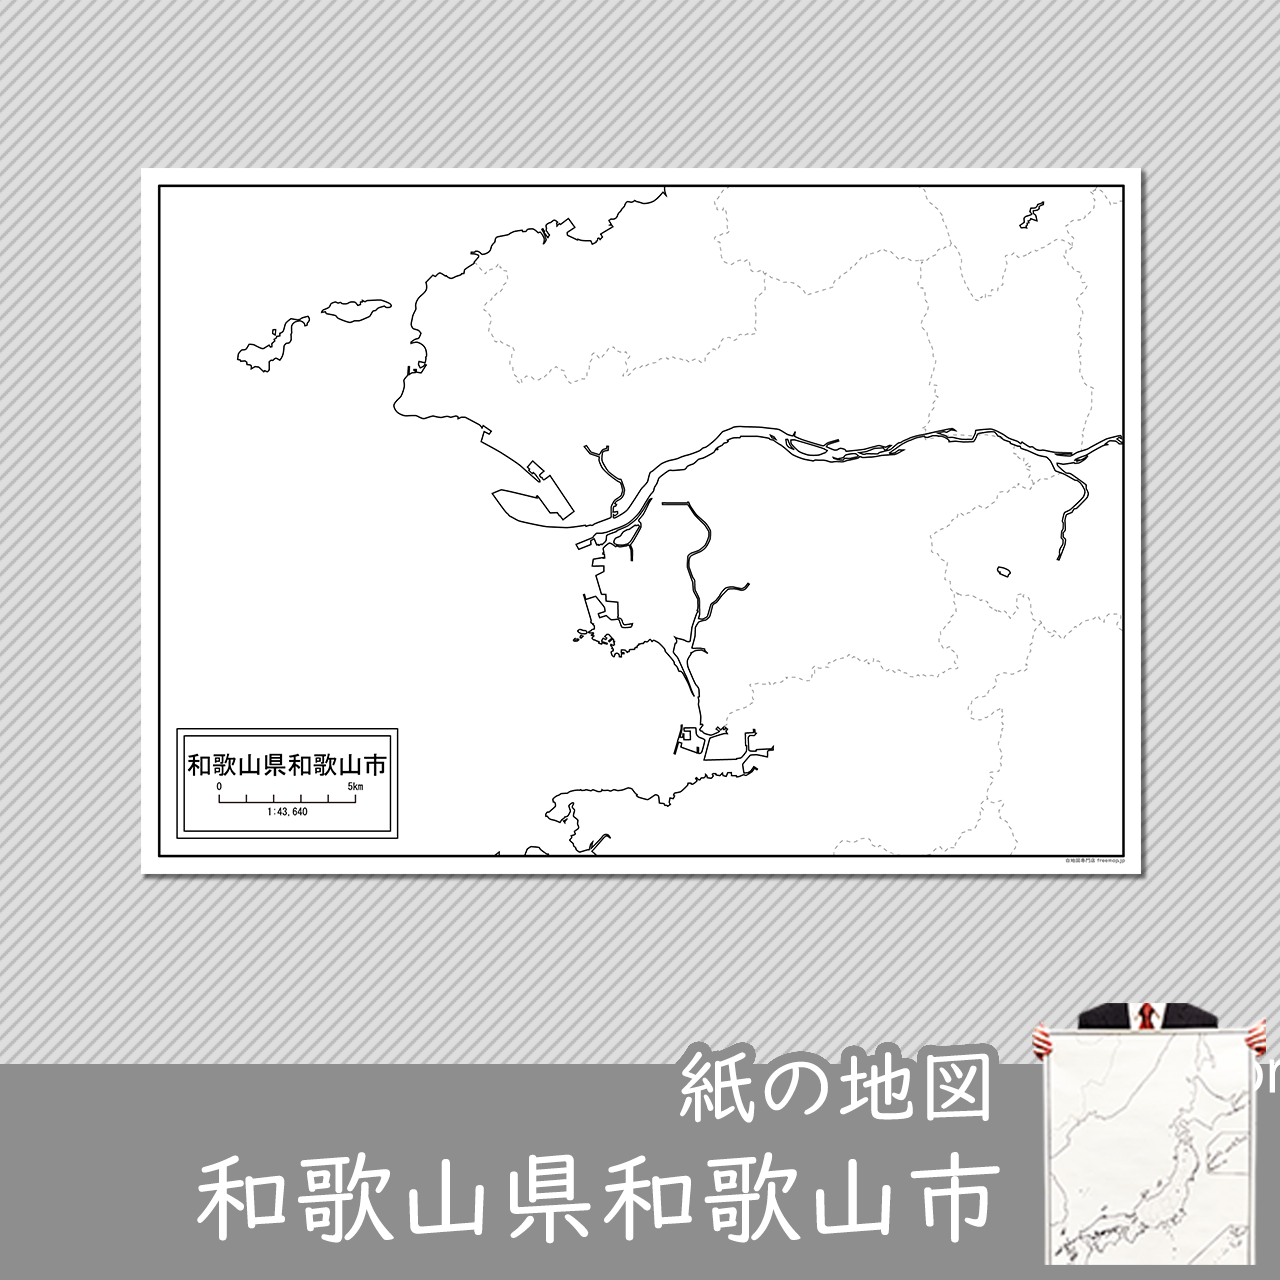 和歌山市の紙の白地図のサムネイル